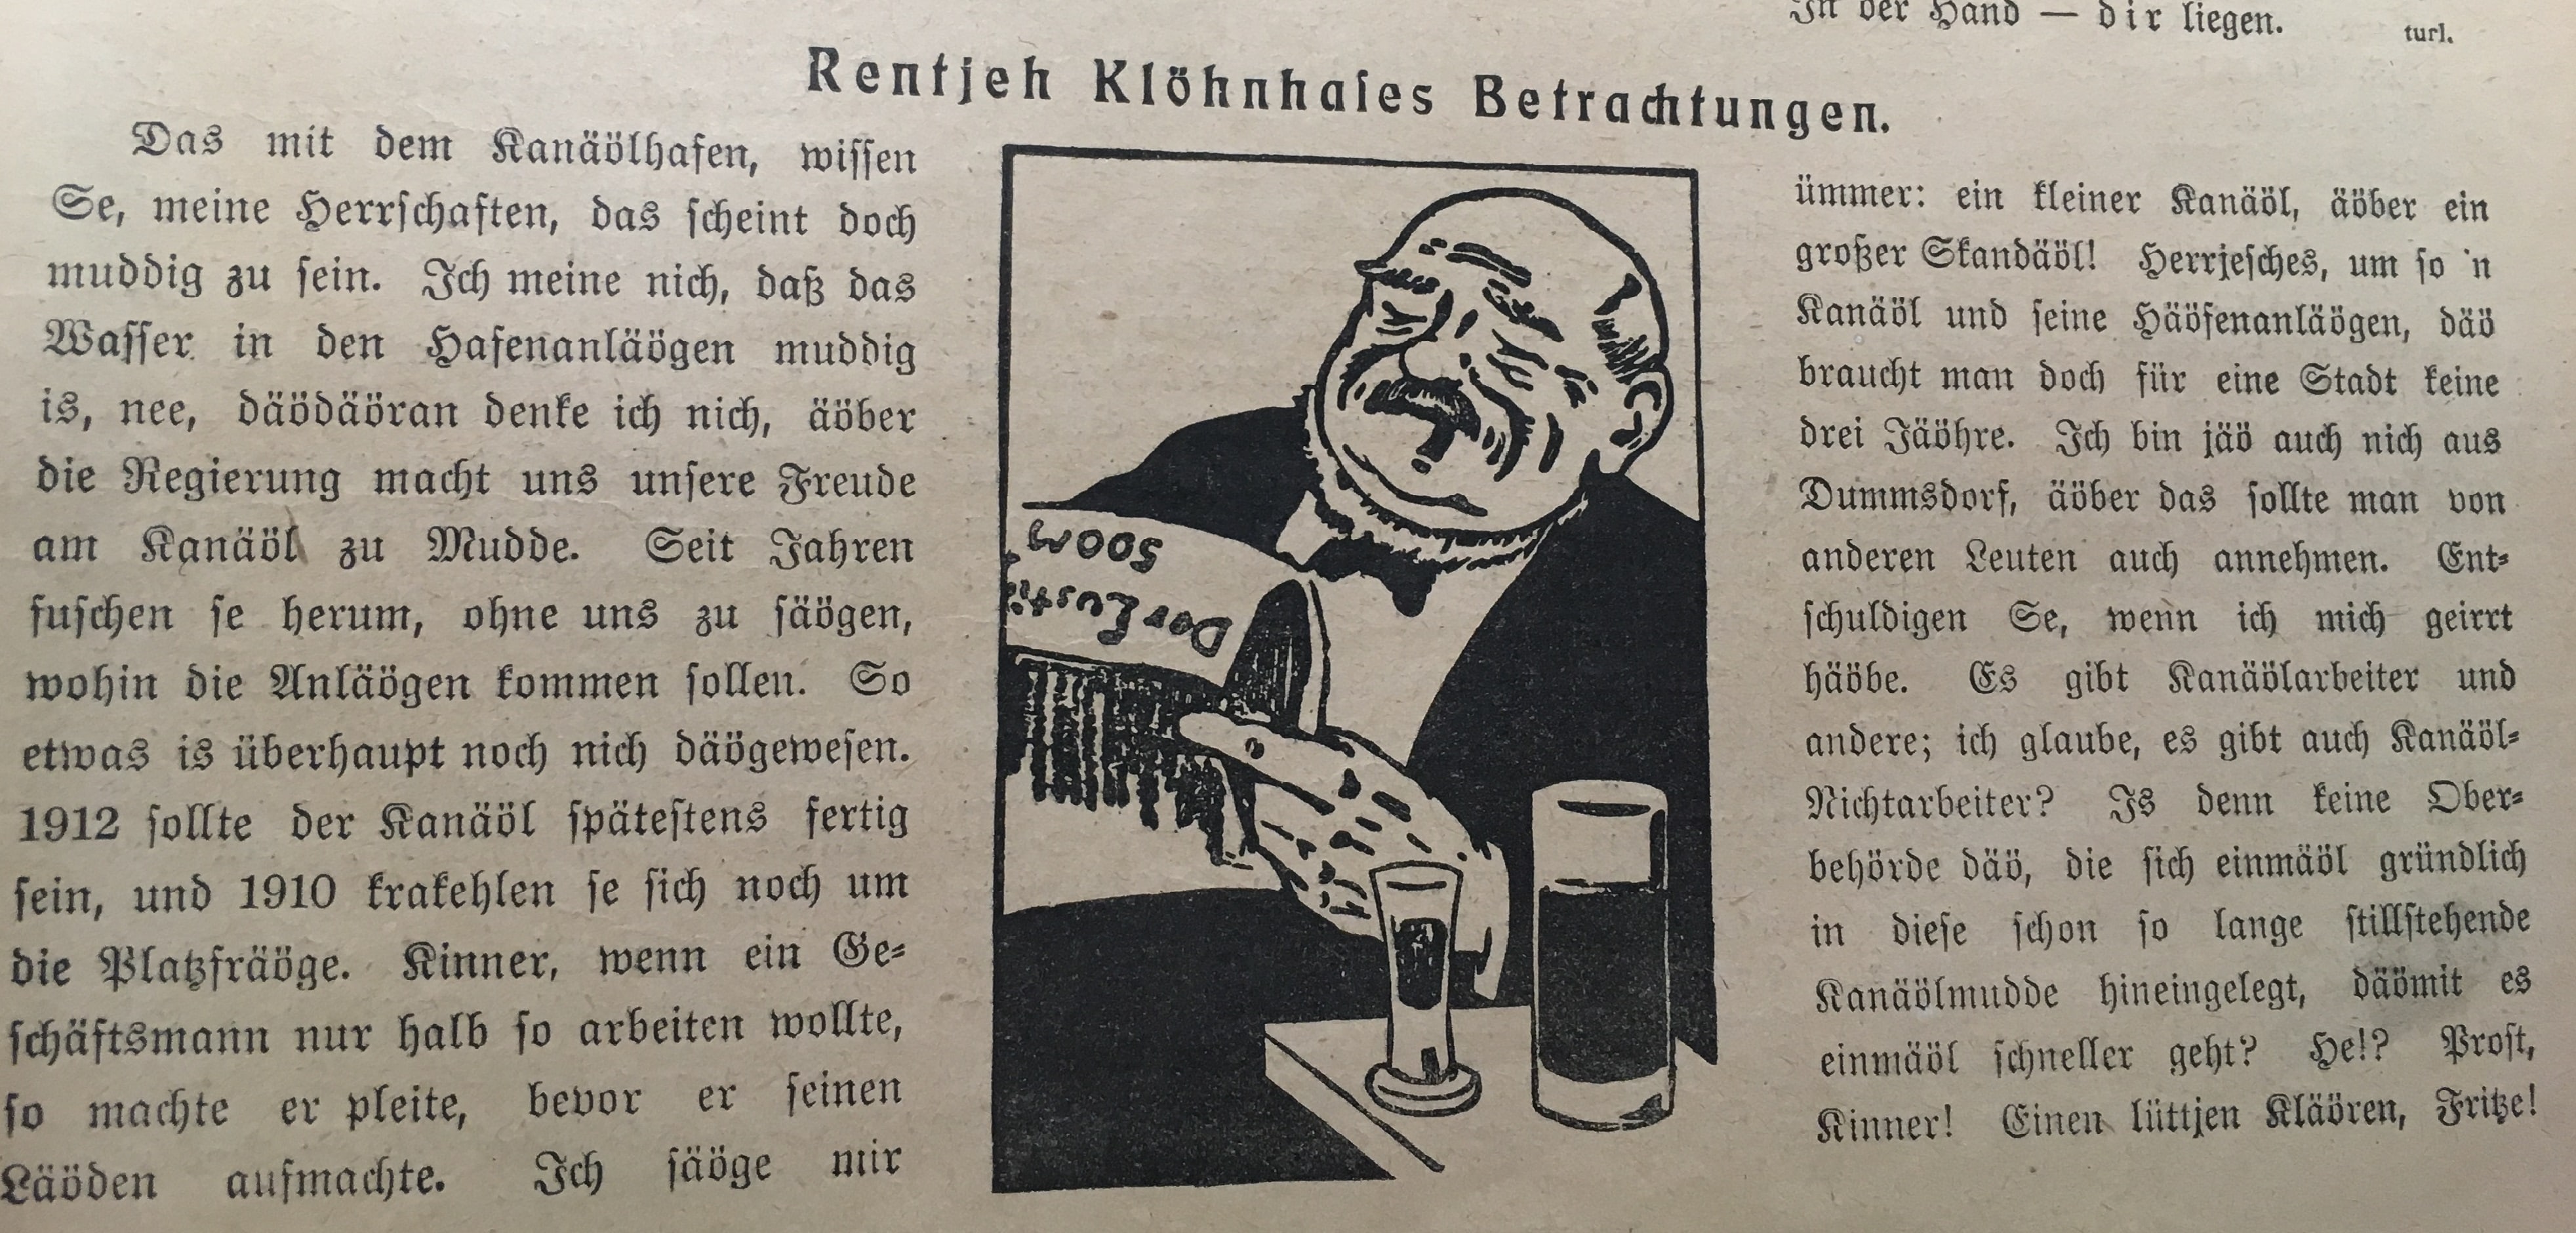 Scan der Kolumne: Rentjeh Klöhnhases Betrachtungen. Historische Zeitungsbeilagen.